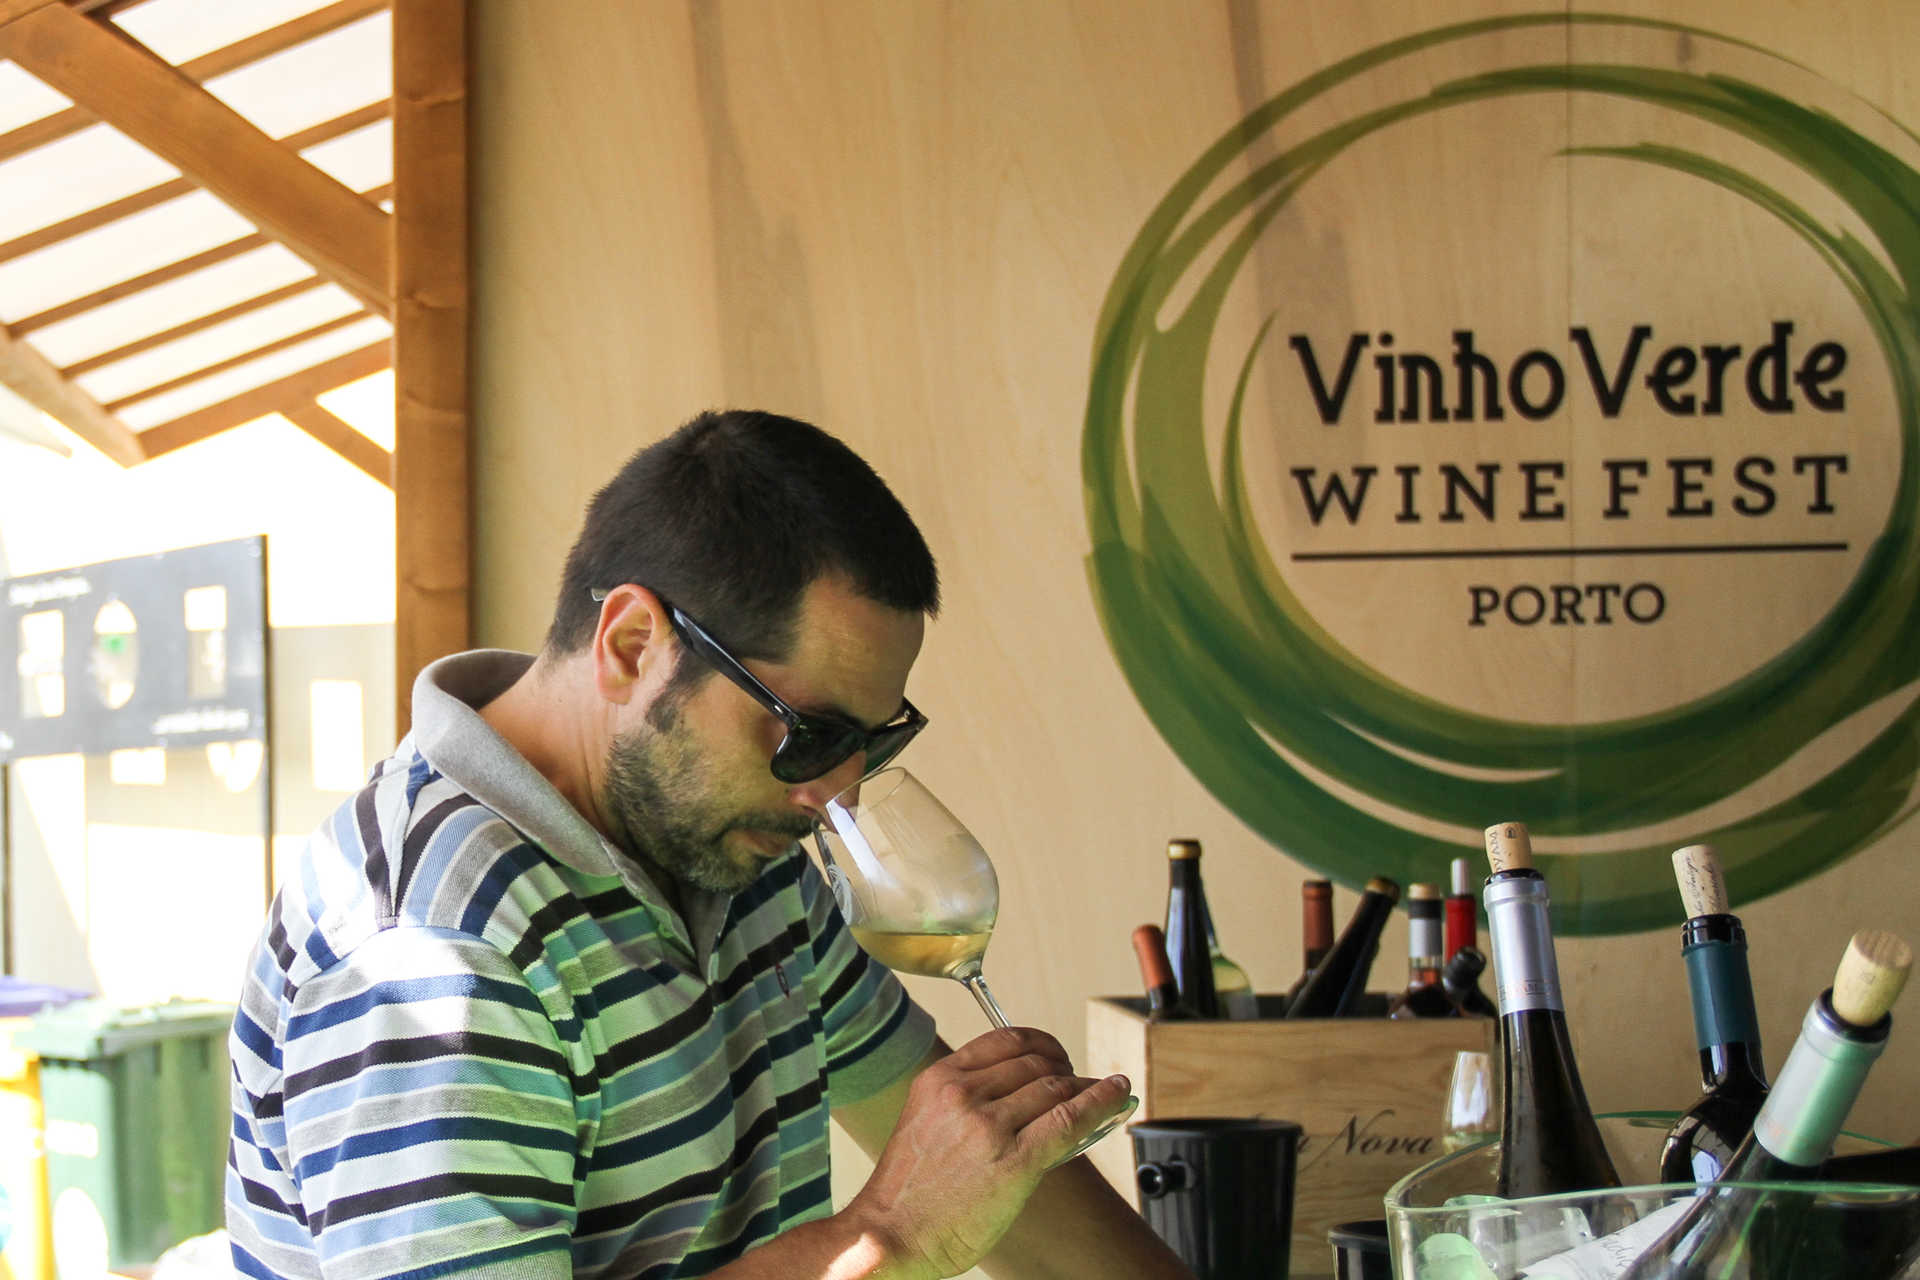 Vinho Verde Wine Fest